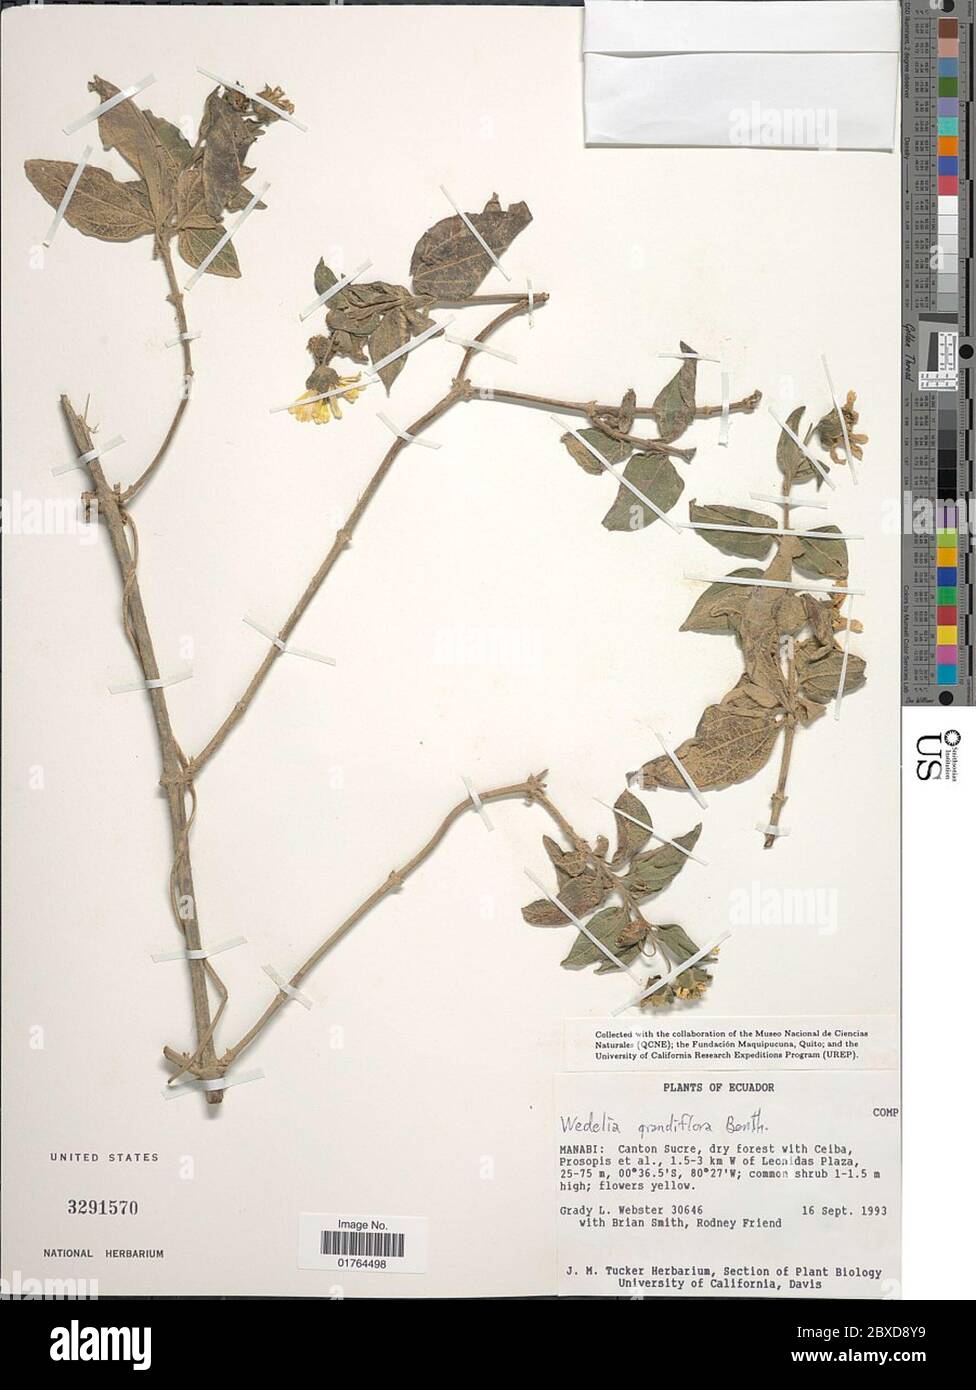 Wedelia grandiflora Benth Wedelia grandiflora Benth. Stock Photo